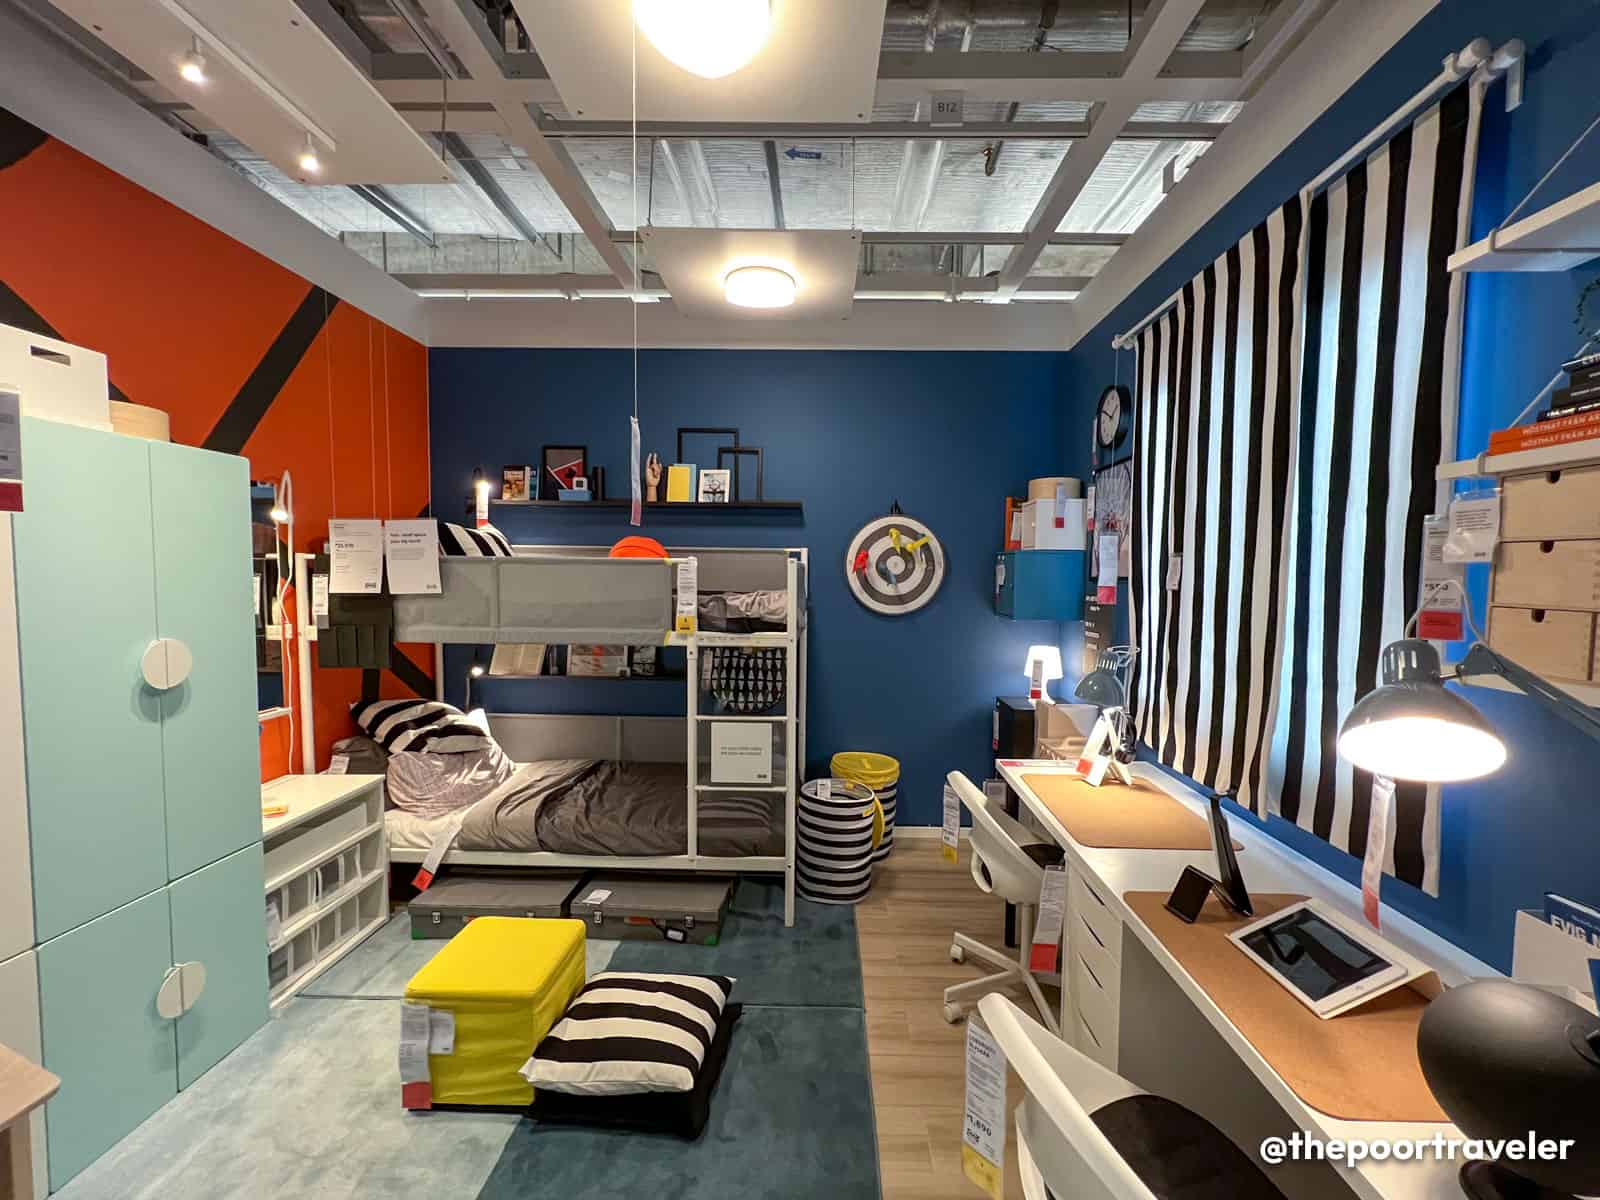 IKEA Sample Kid's Room Design